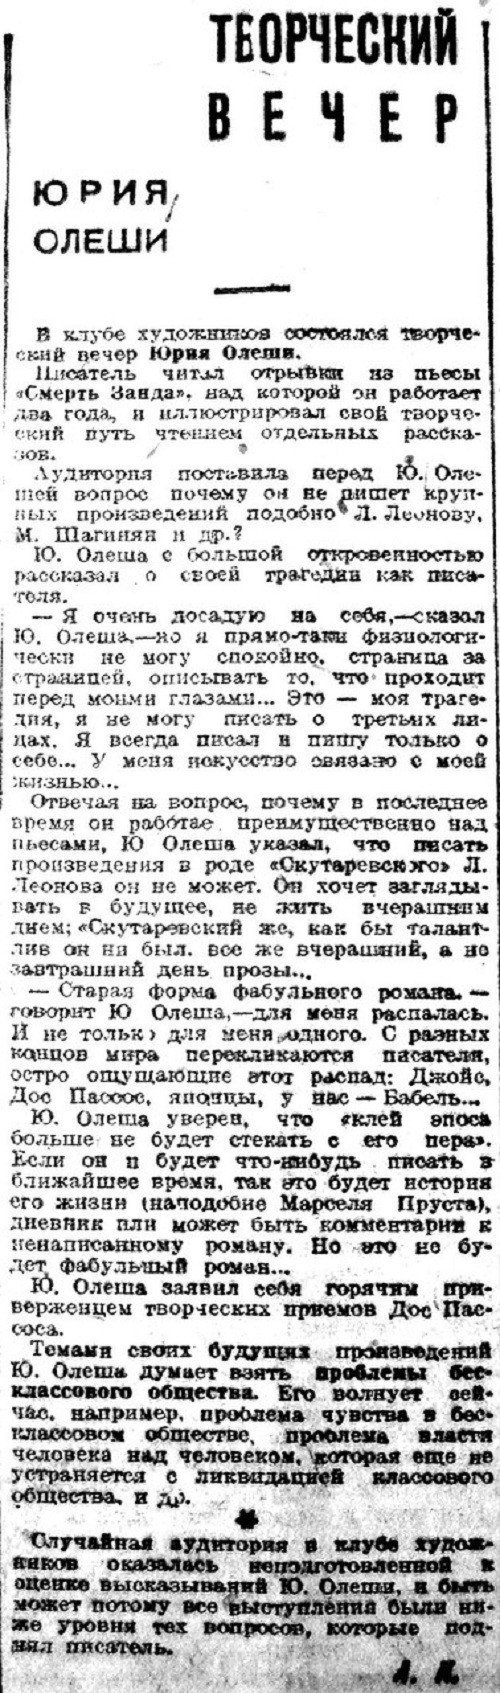 «Вечерняя Москва», 10 октября 1932 г.